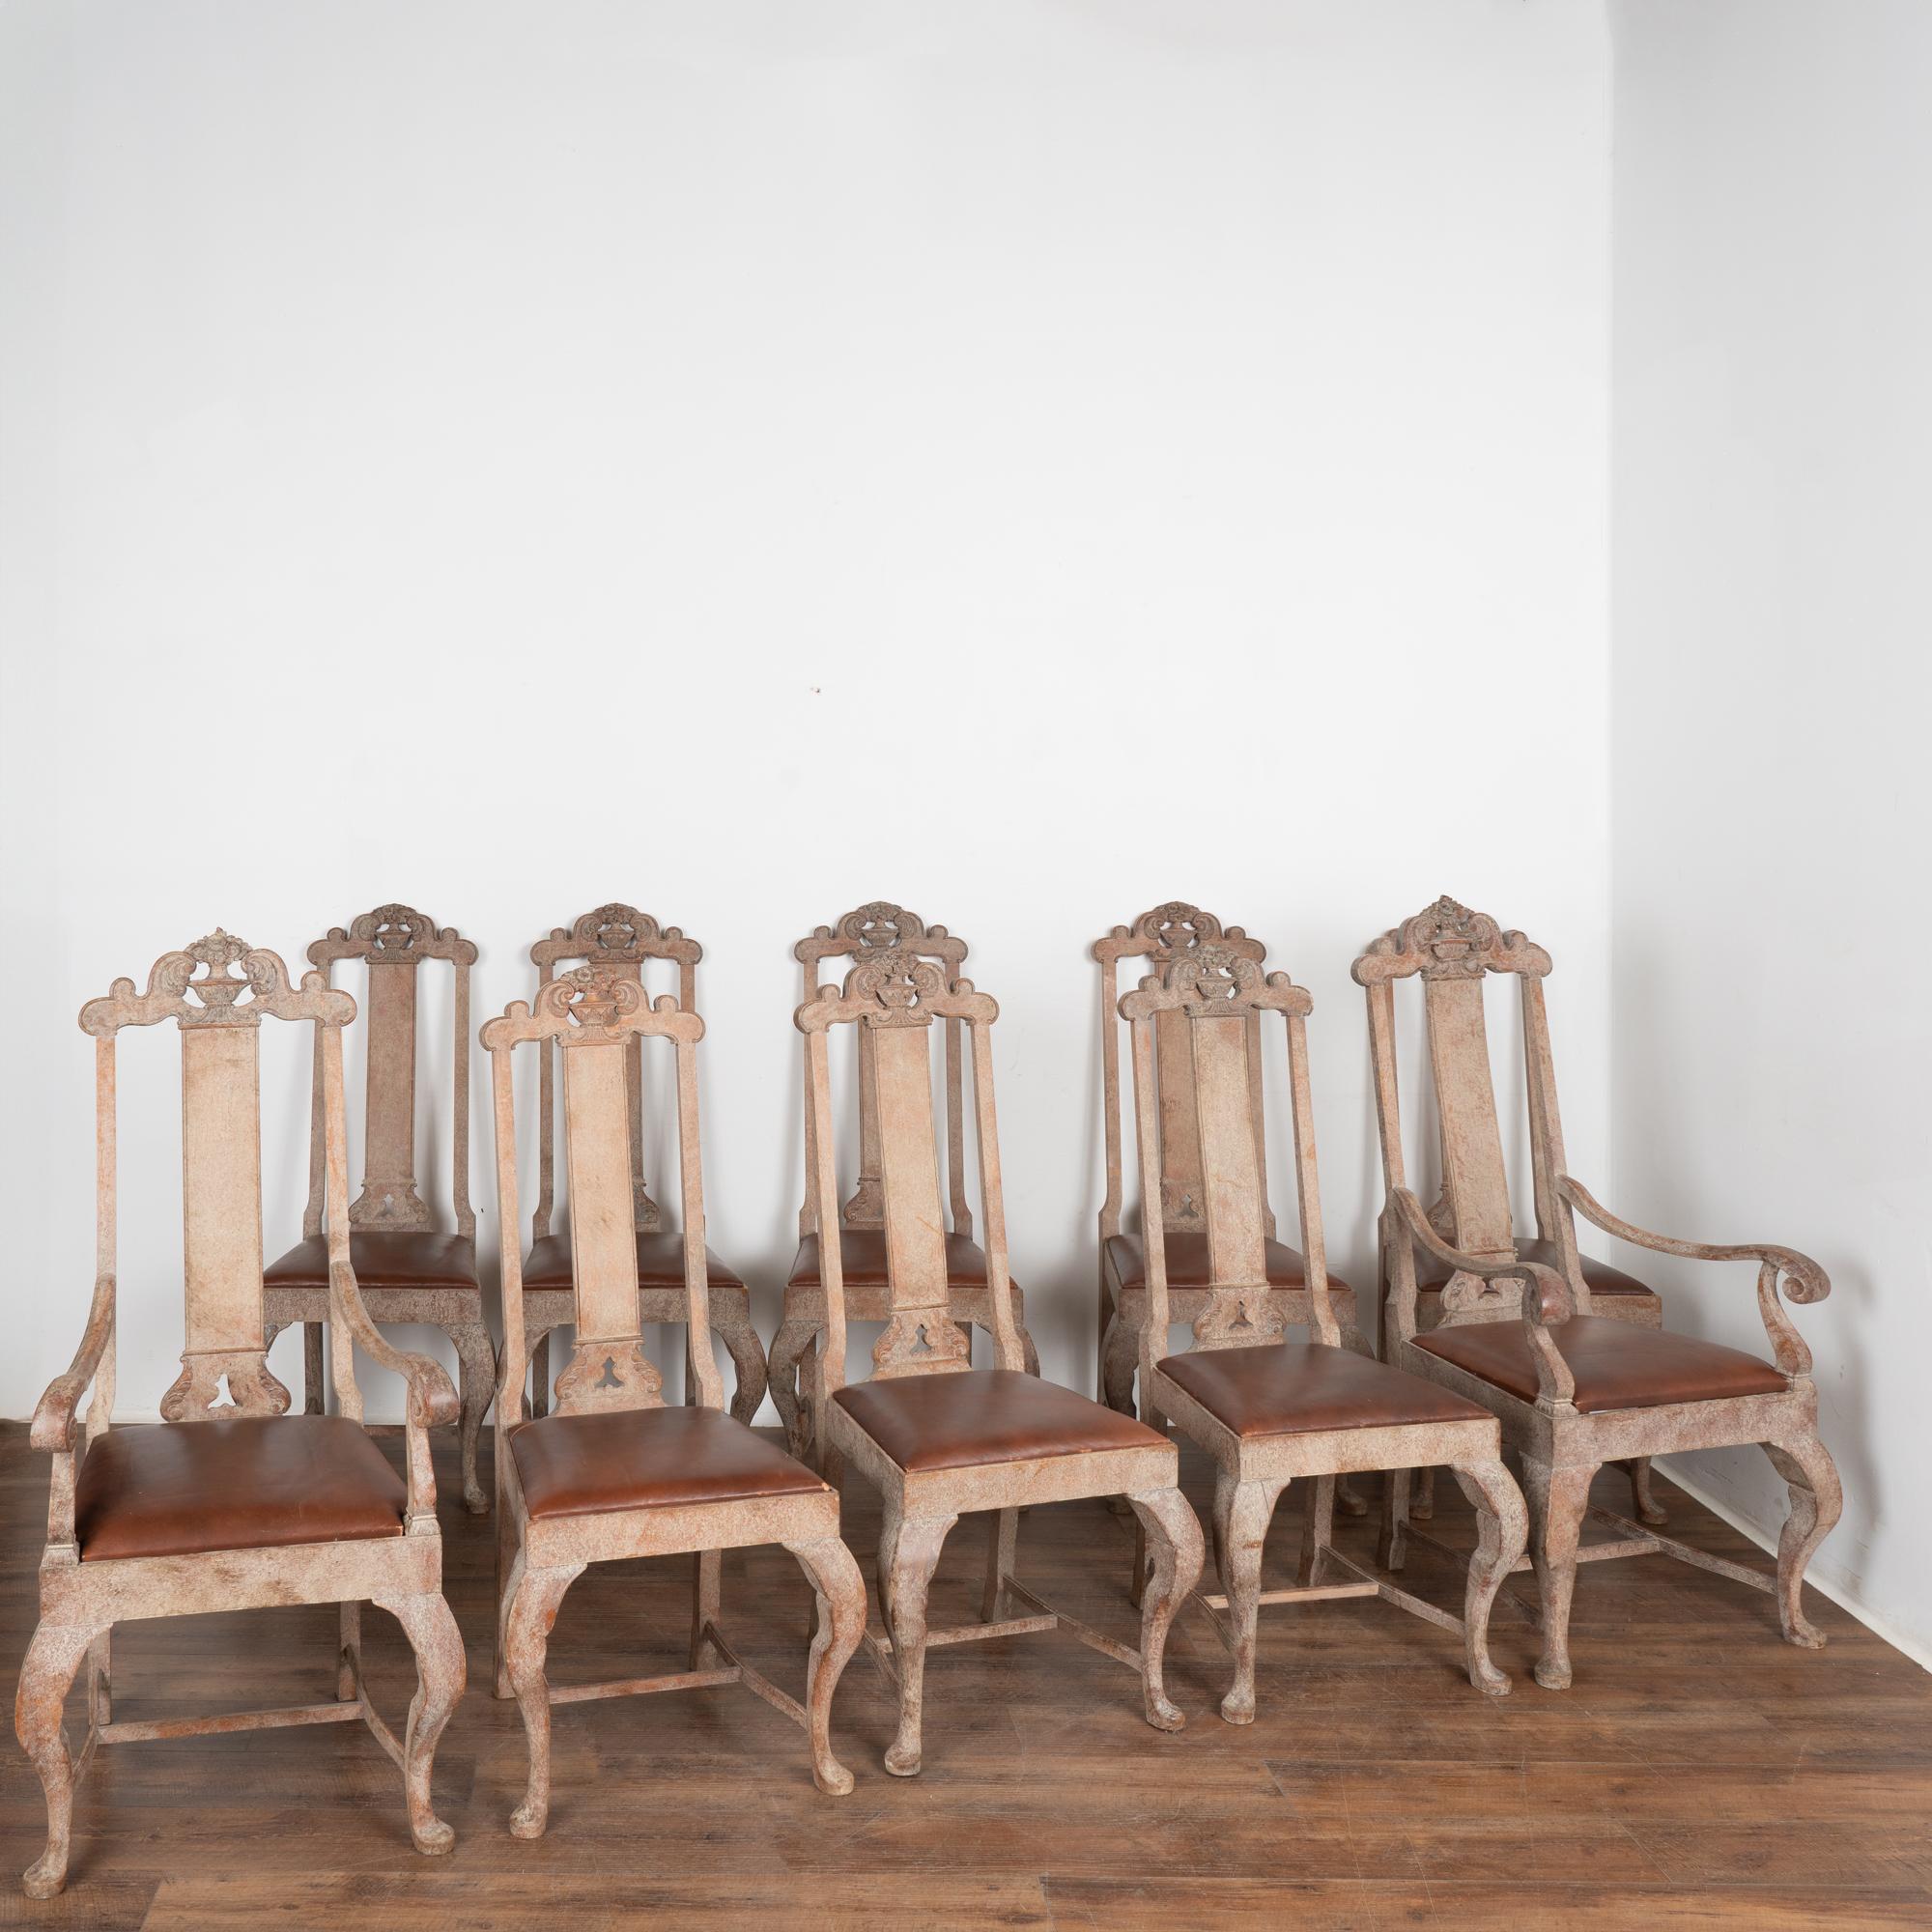 Ensemble antique de dix chaises de salle à manger baroques suédoises à dossier haut, huit chaises d'appoint et deux fauteuils inclus. 
Notez l'exceptionnelle finition peinte en blanc antique et frottée, créant un aspect riche et profond avec le